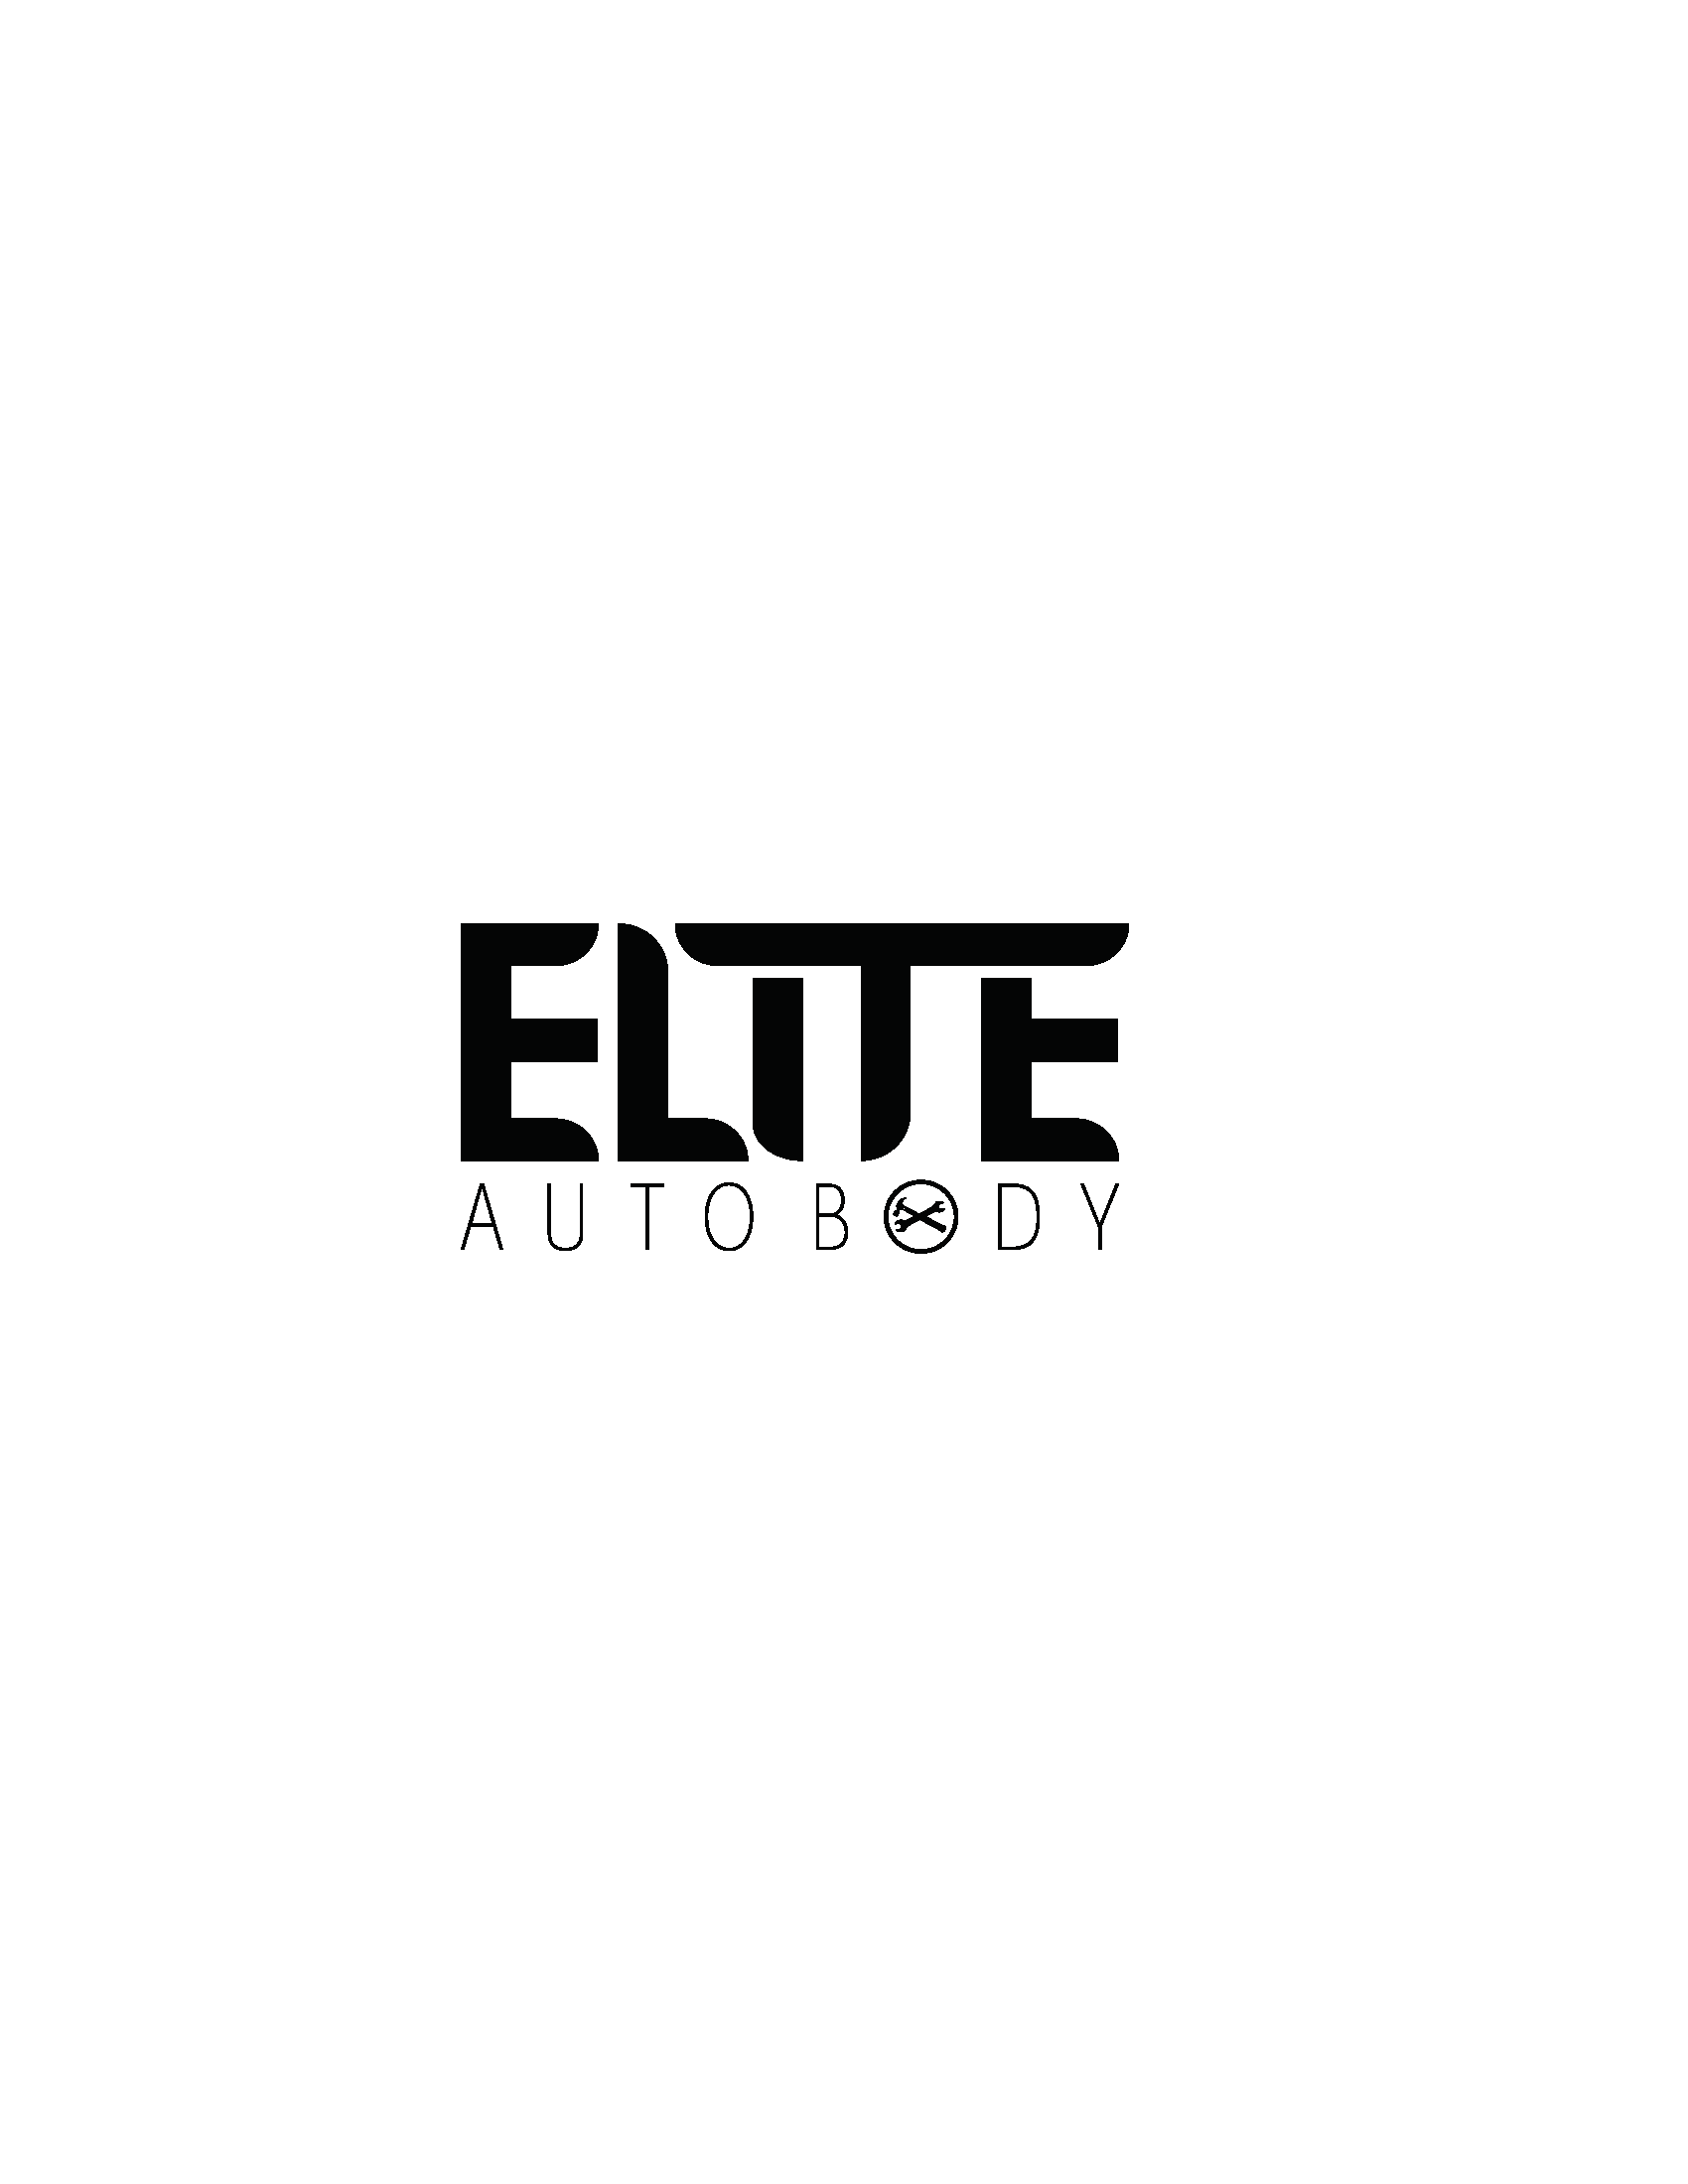 Elite Auto Body